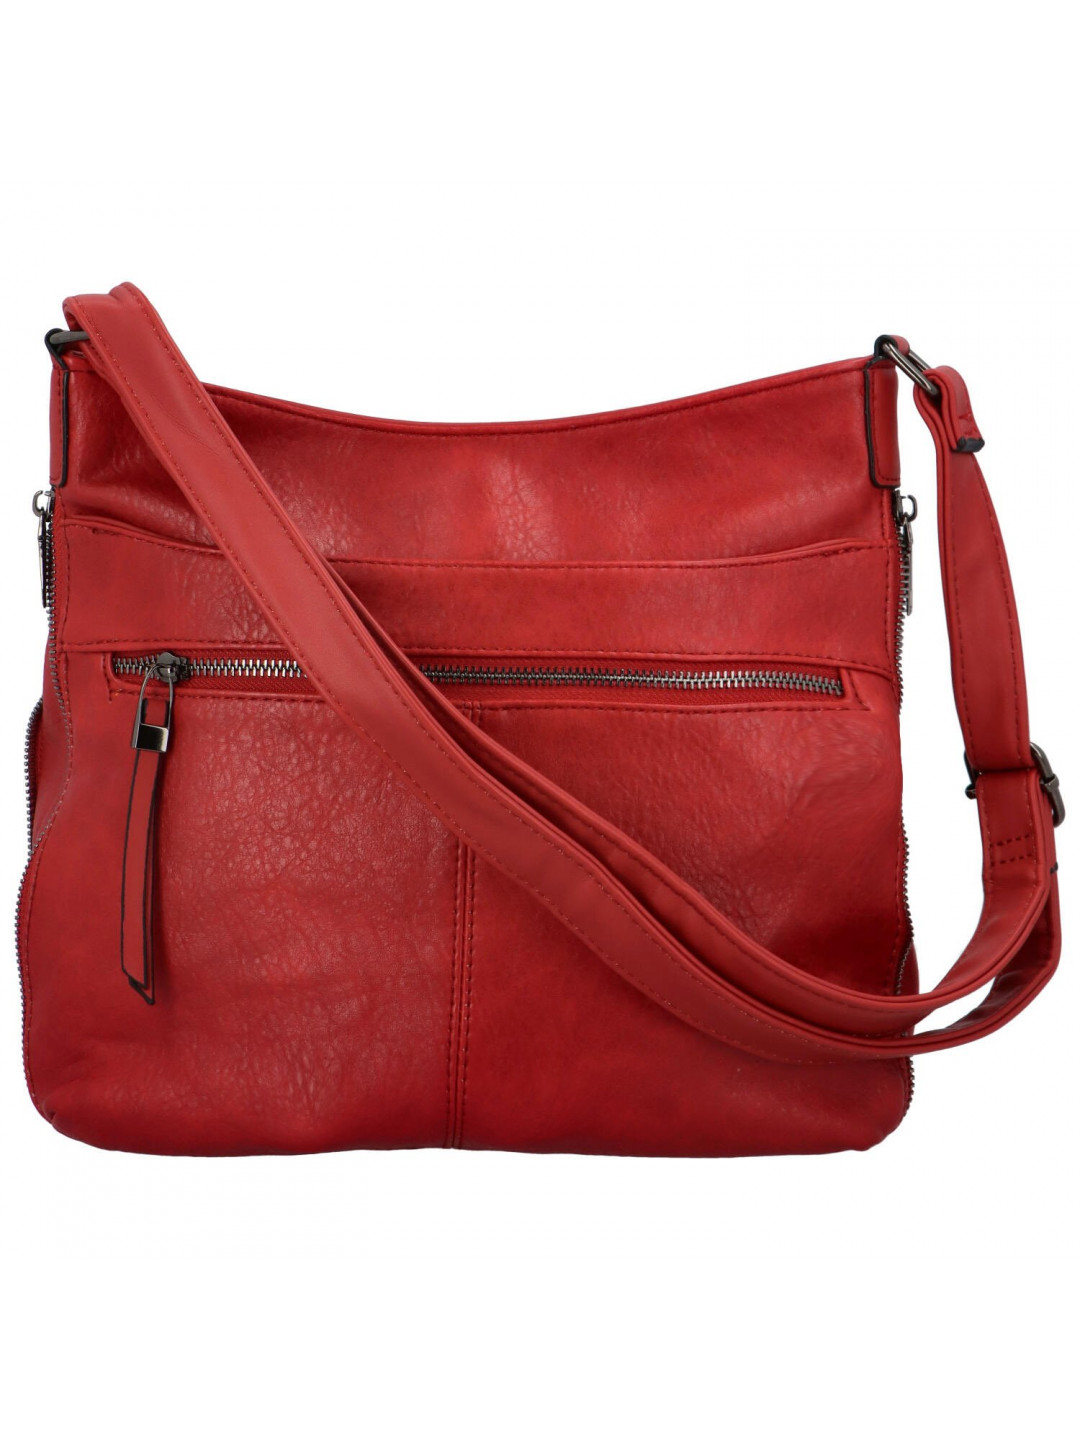 Dámská kabelka přes rameno červená – Romina & Co Bags Fallon